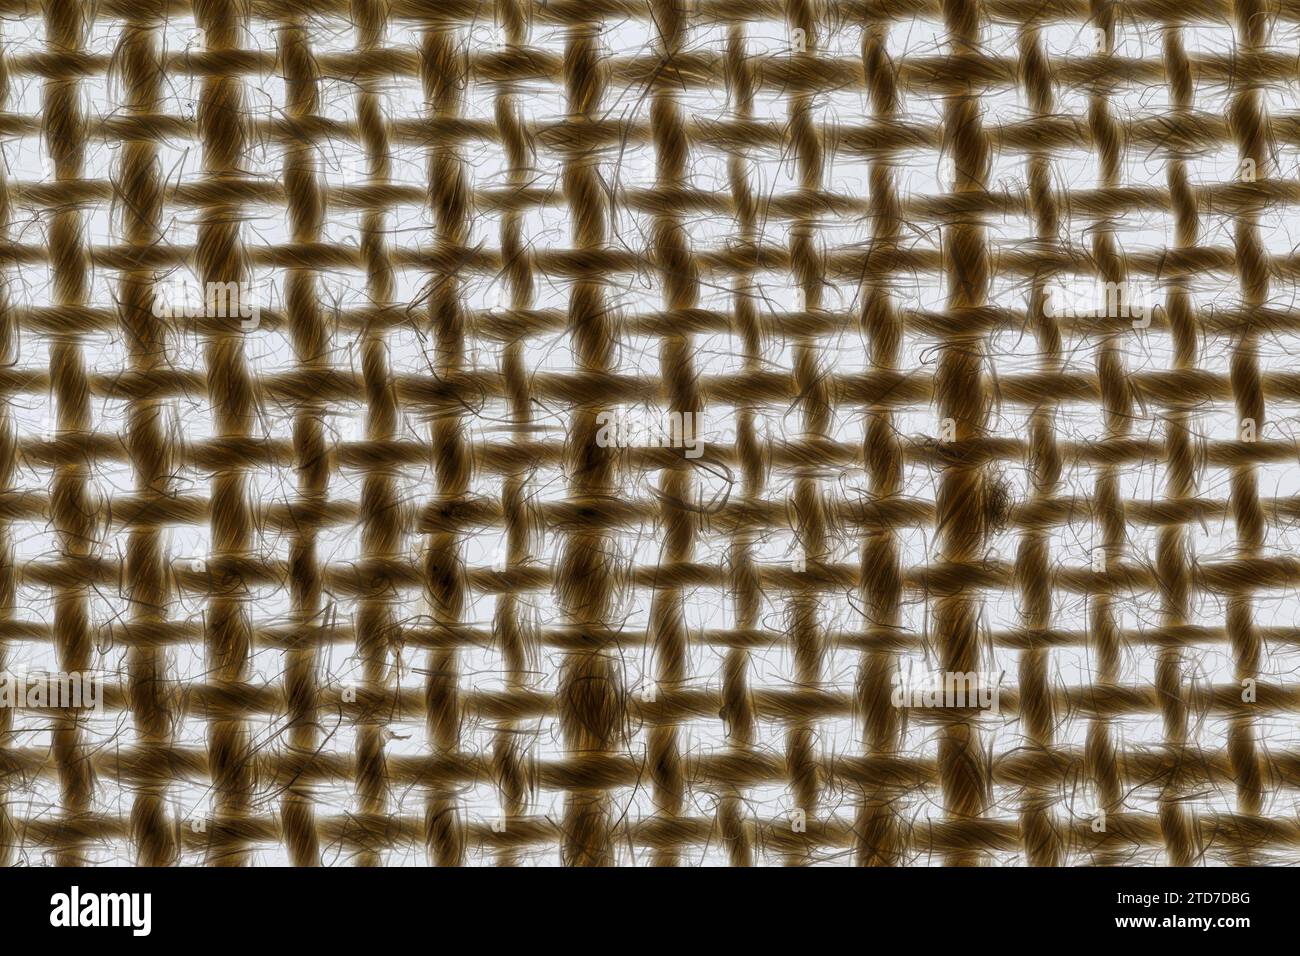 Texture de toile de jute grossière avec rétro-éclairage. Tissu tissé naturel. Macrophotographie Banque D'Images